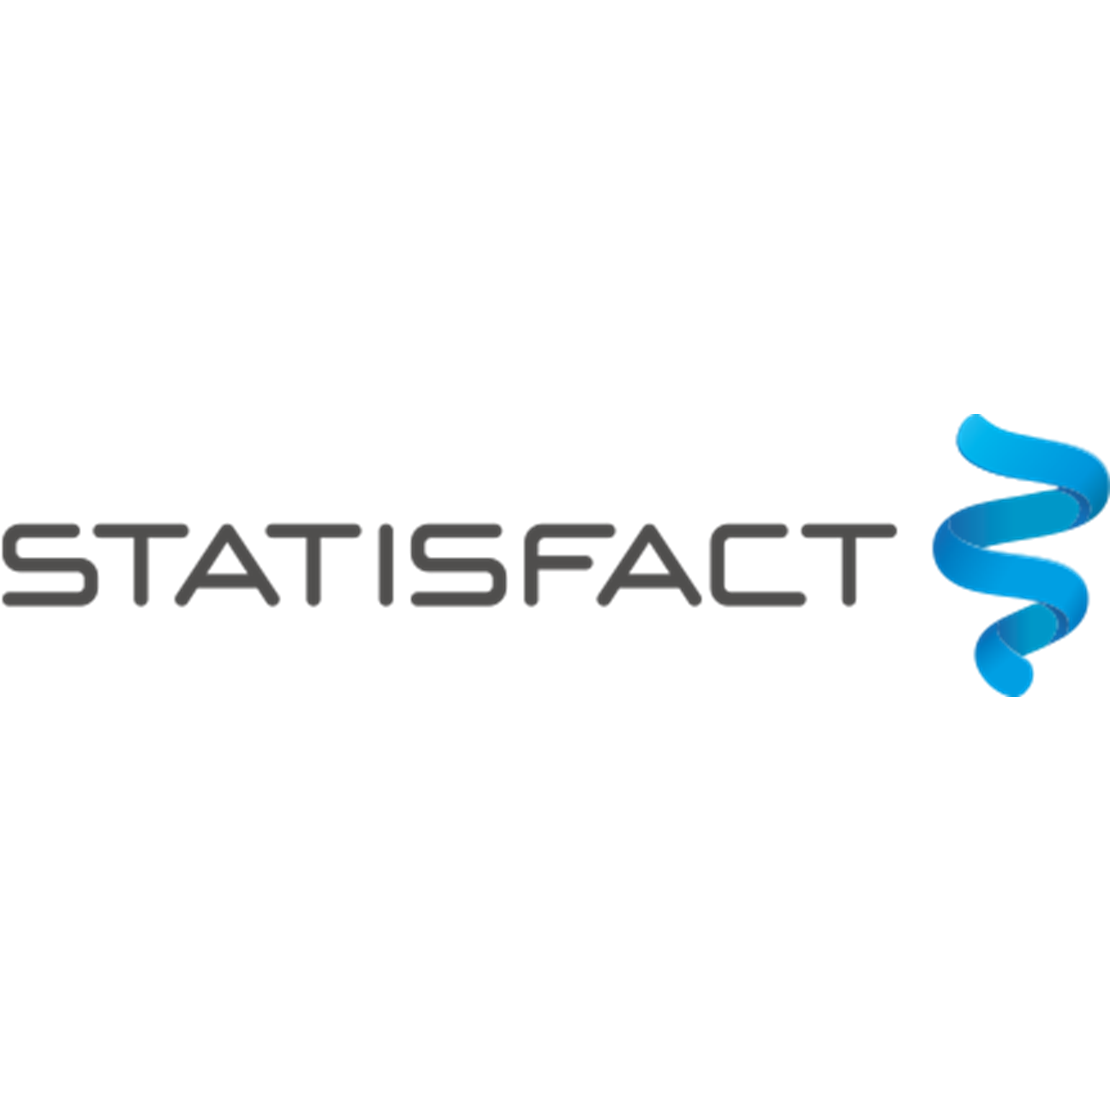 Statisfact